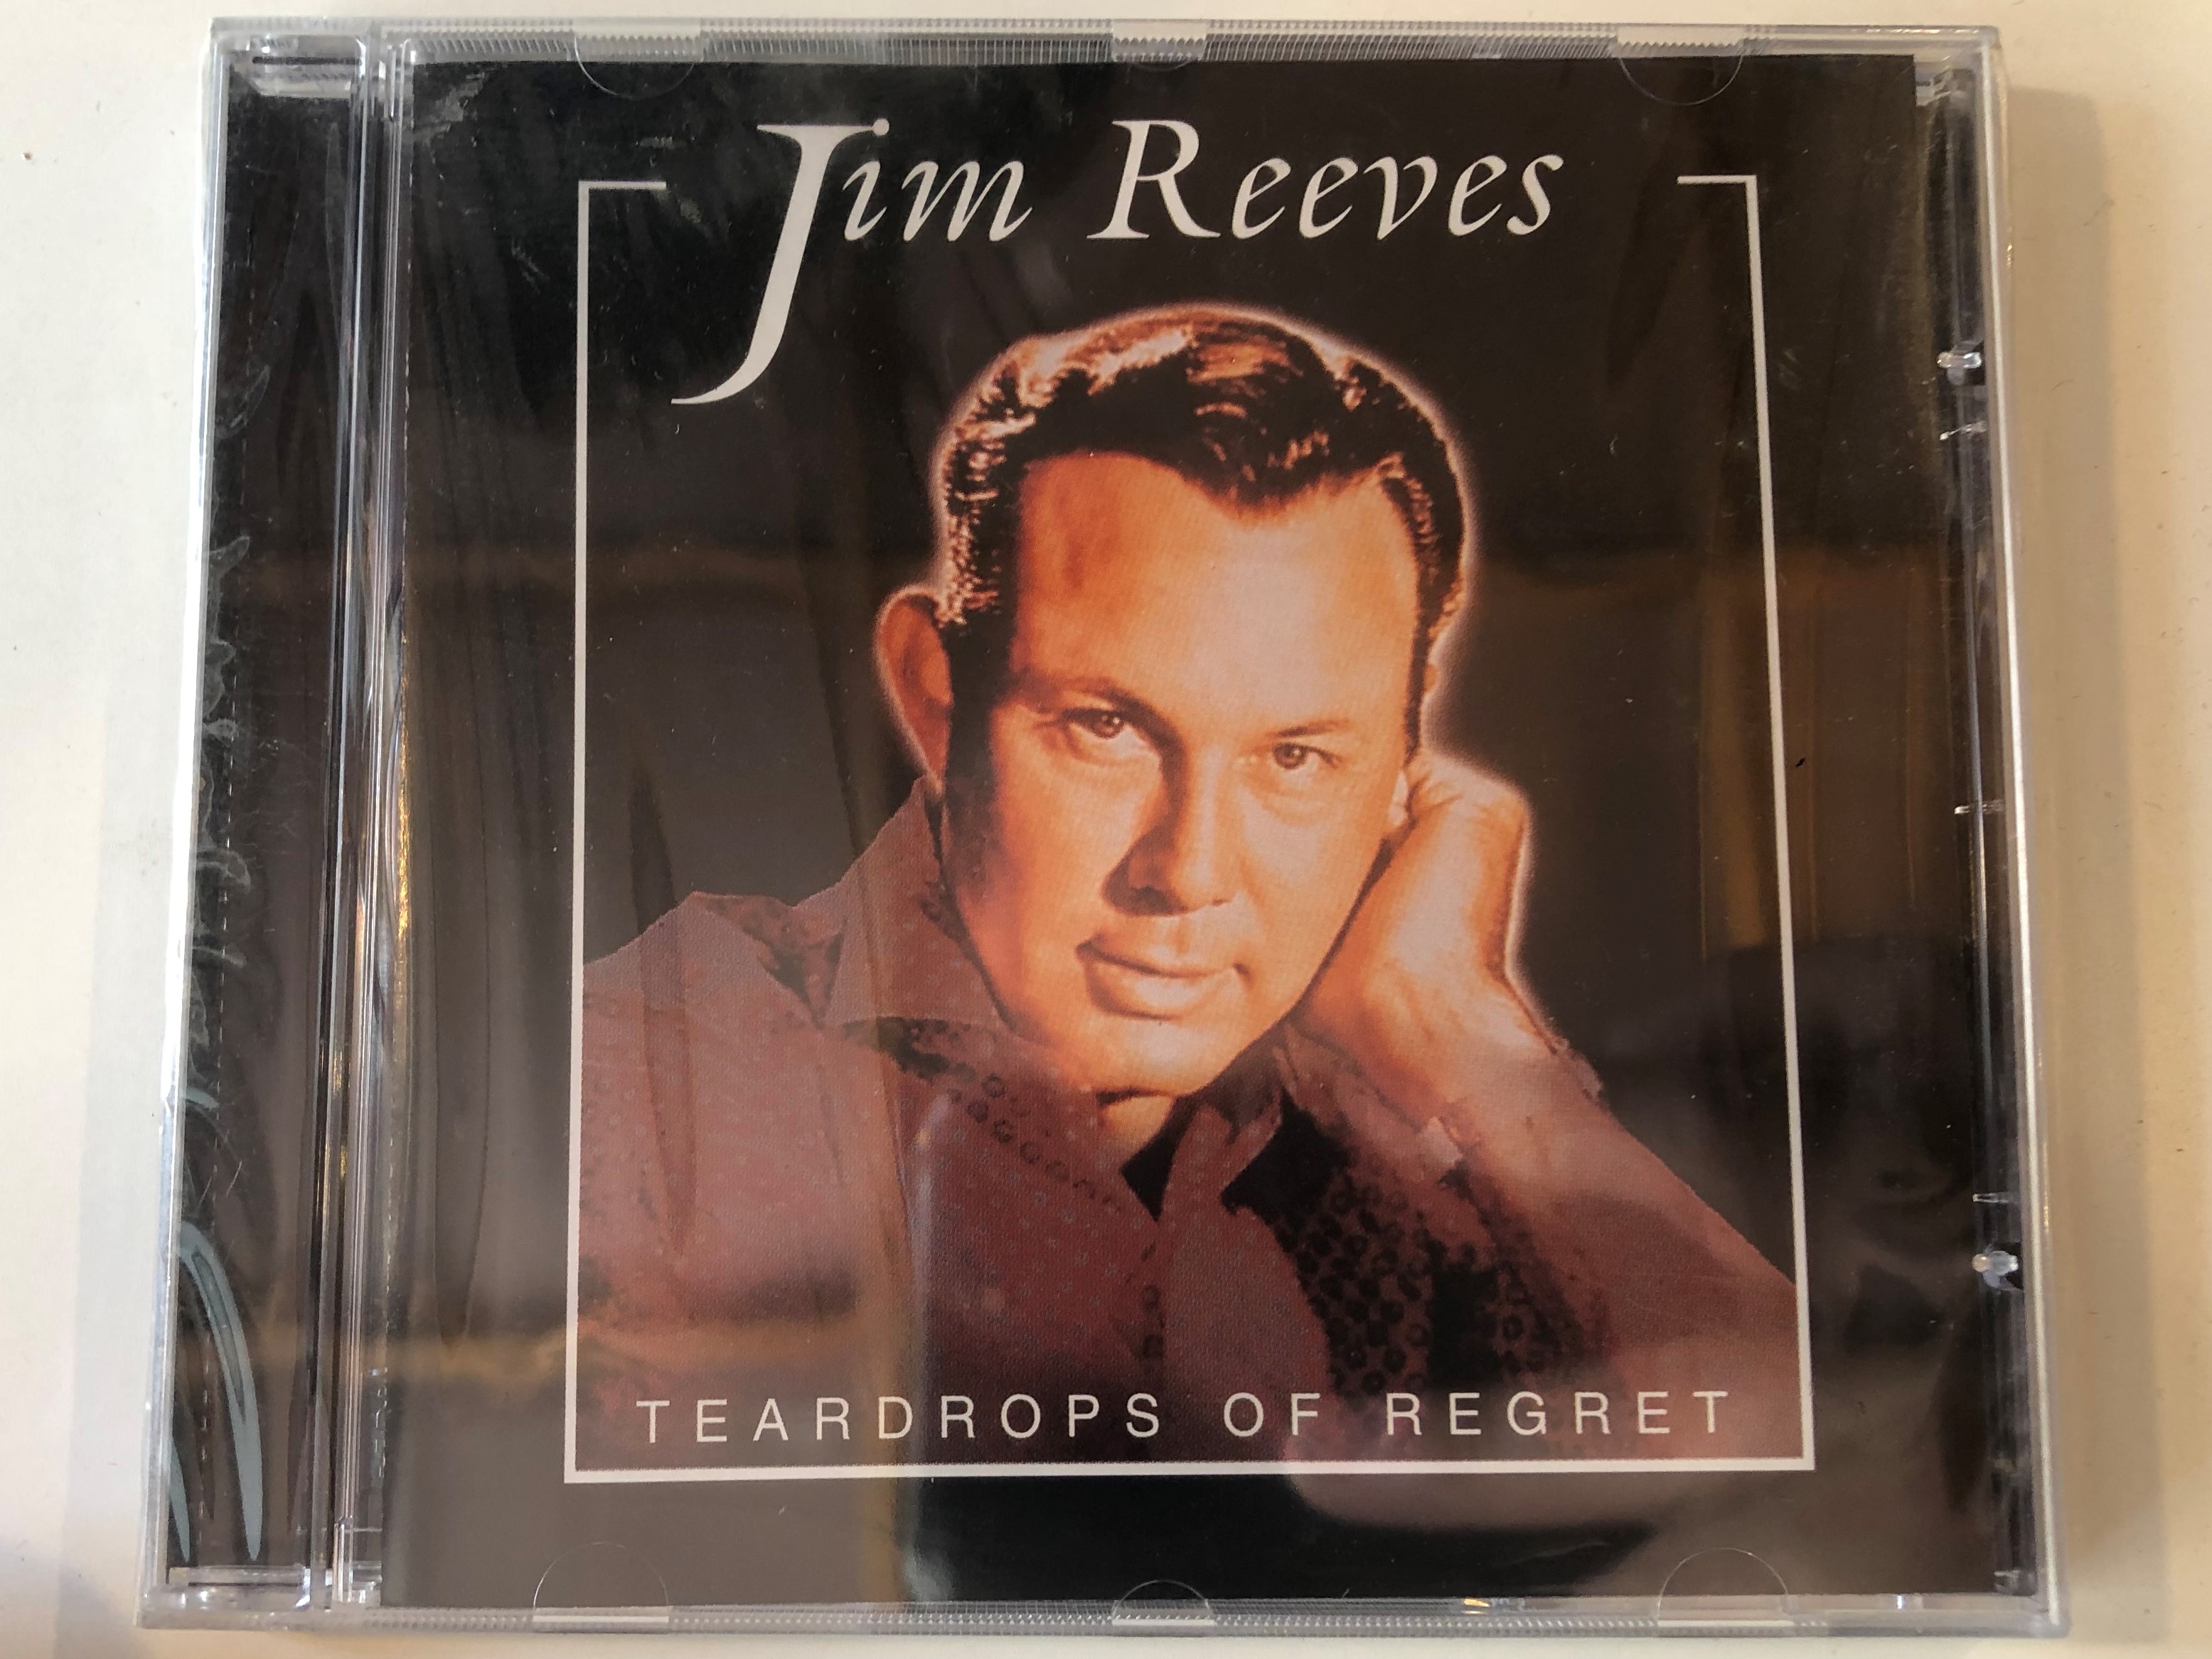 jim-reeves-teardrops-of-regret-elap-audio-cd-2000-5706238309520-1-.jpg